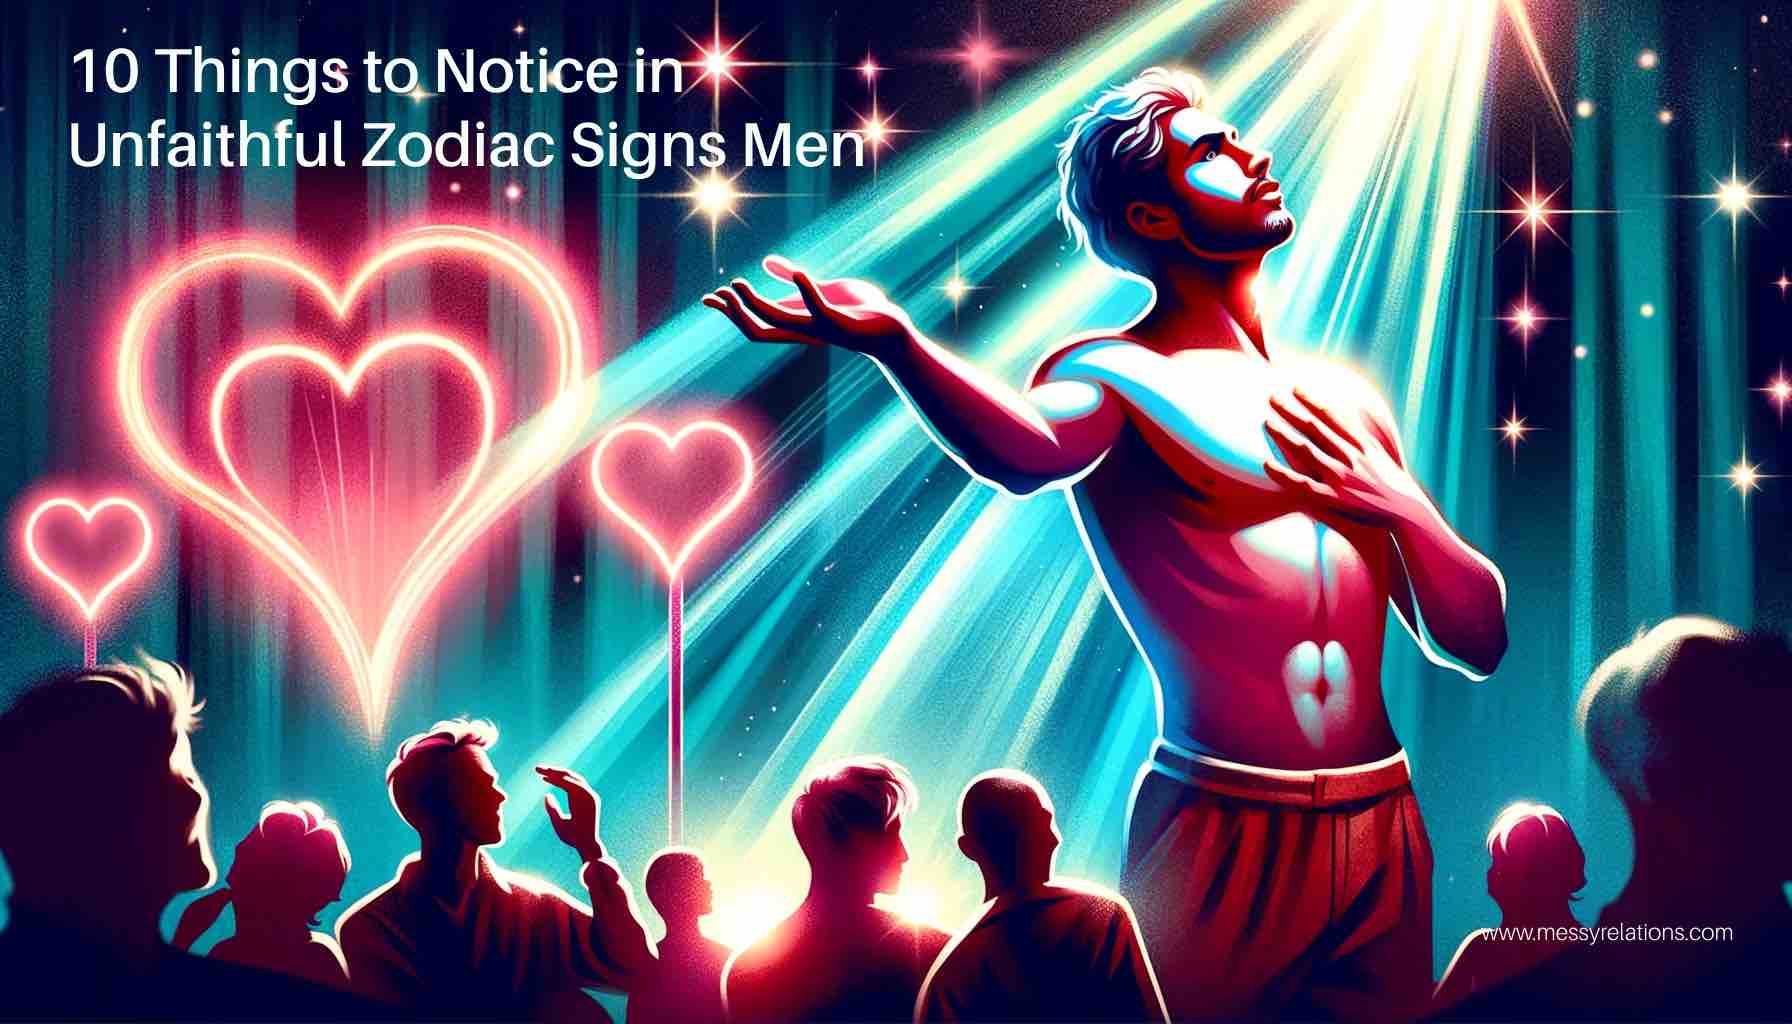 Unfaithful Zodiac Signs Men